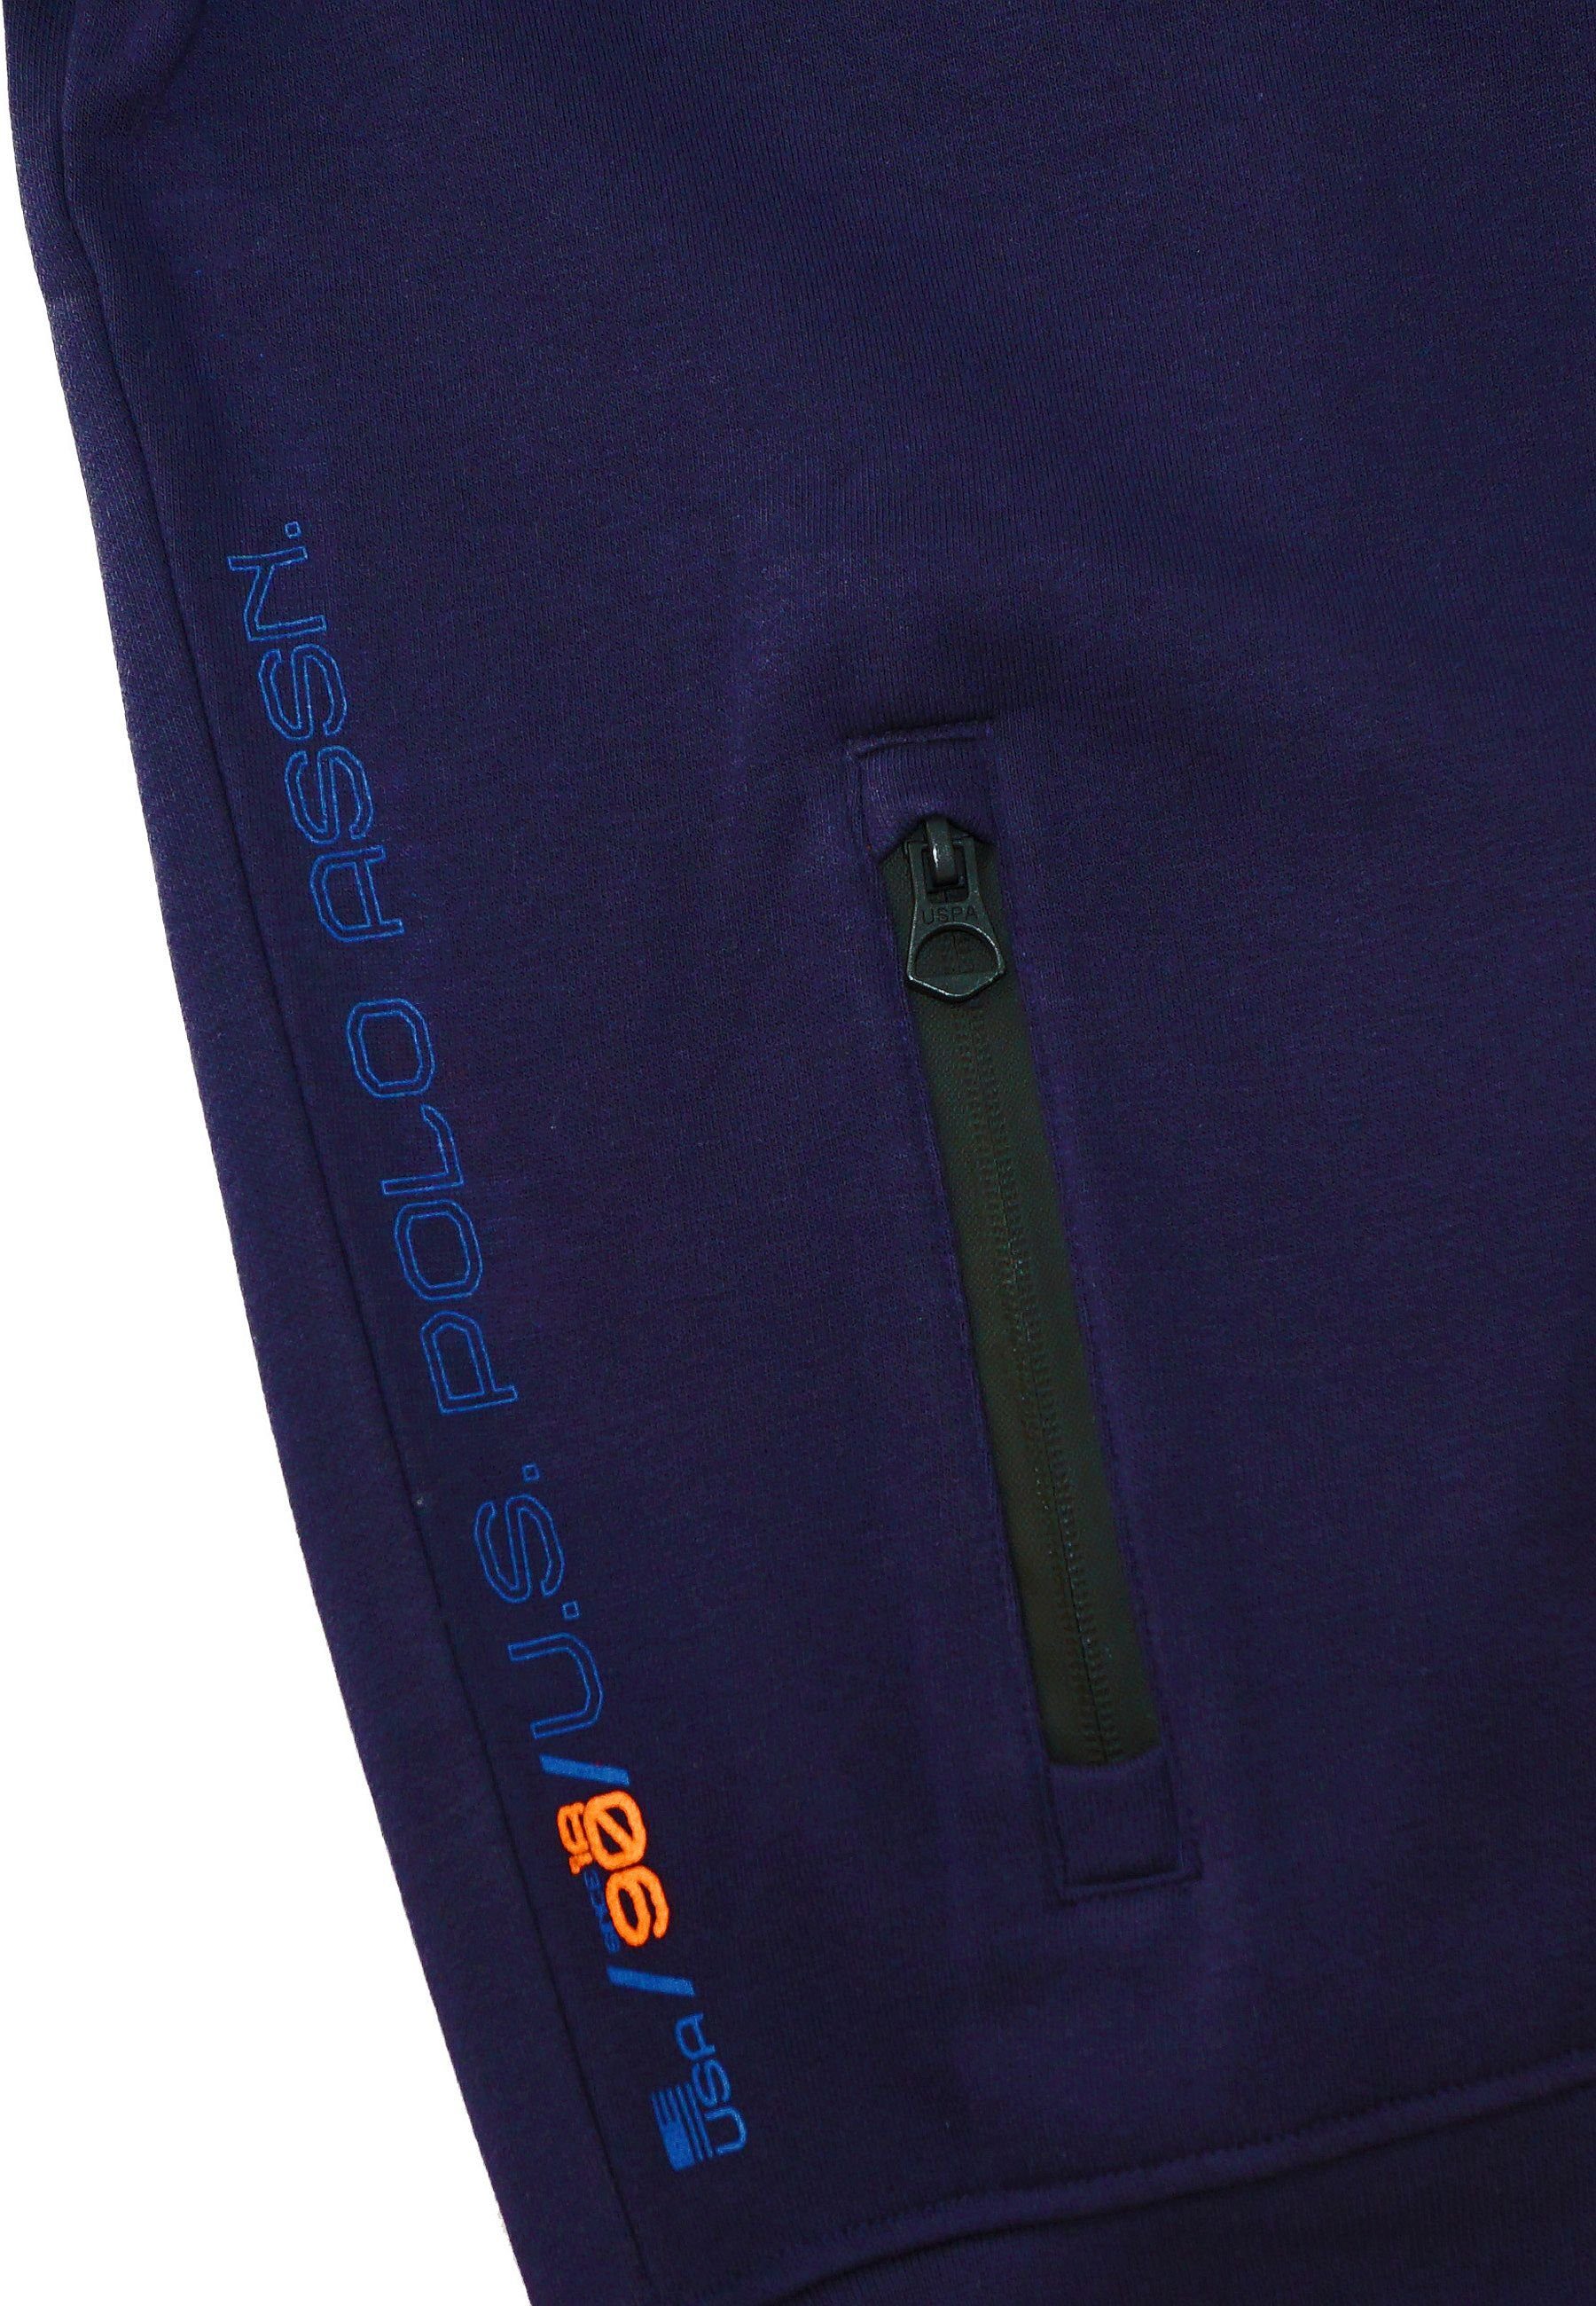 U.S. Polo Assn Sweatjacke Jacke No.3 Pro dunkelblau Full Sweatjacket Zip